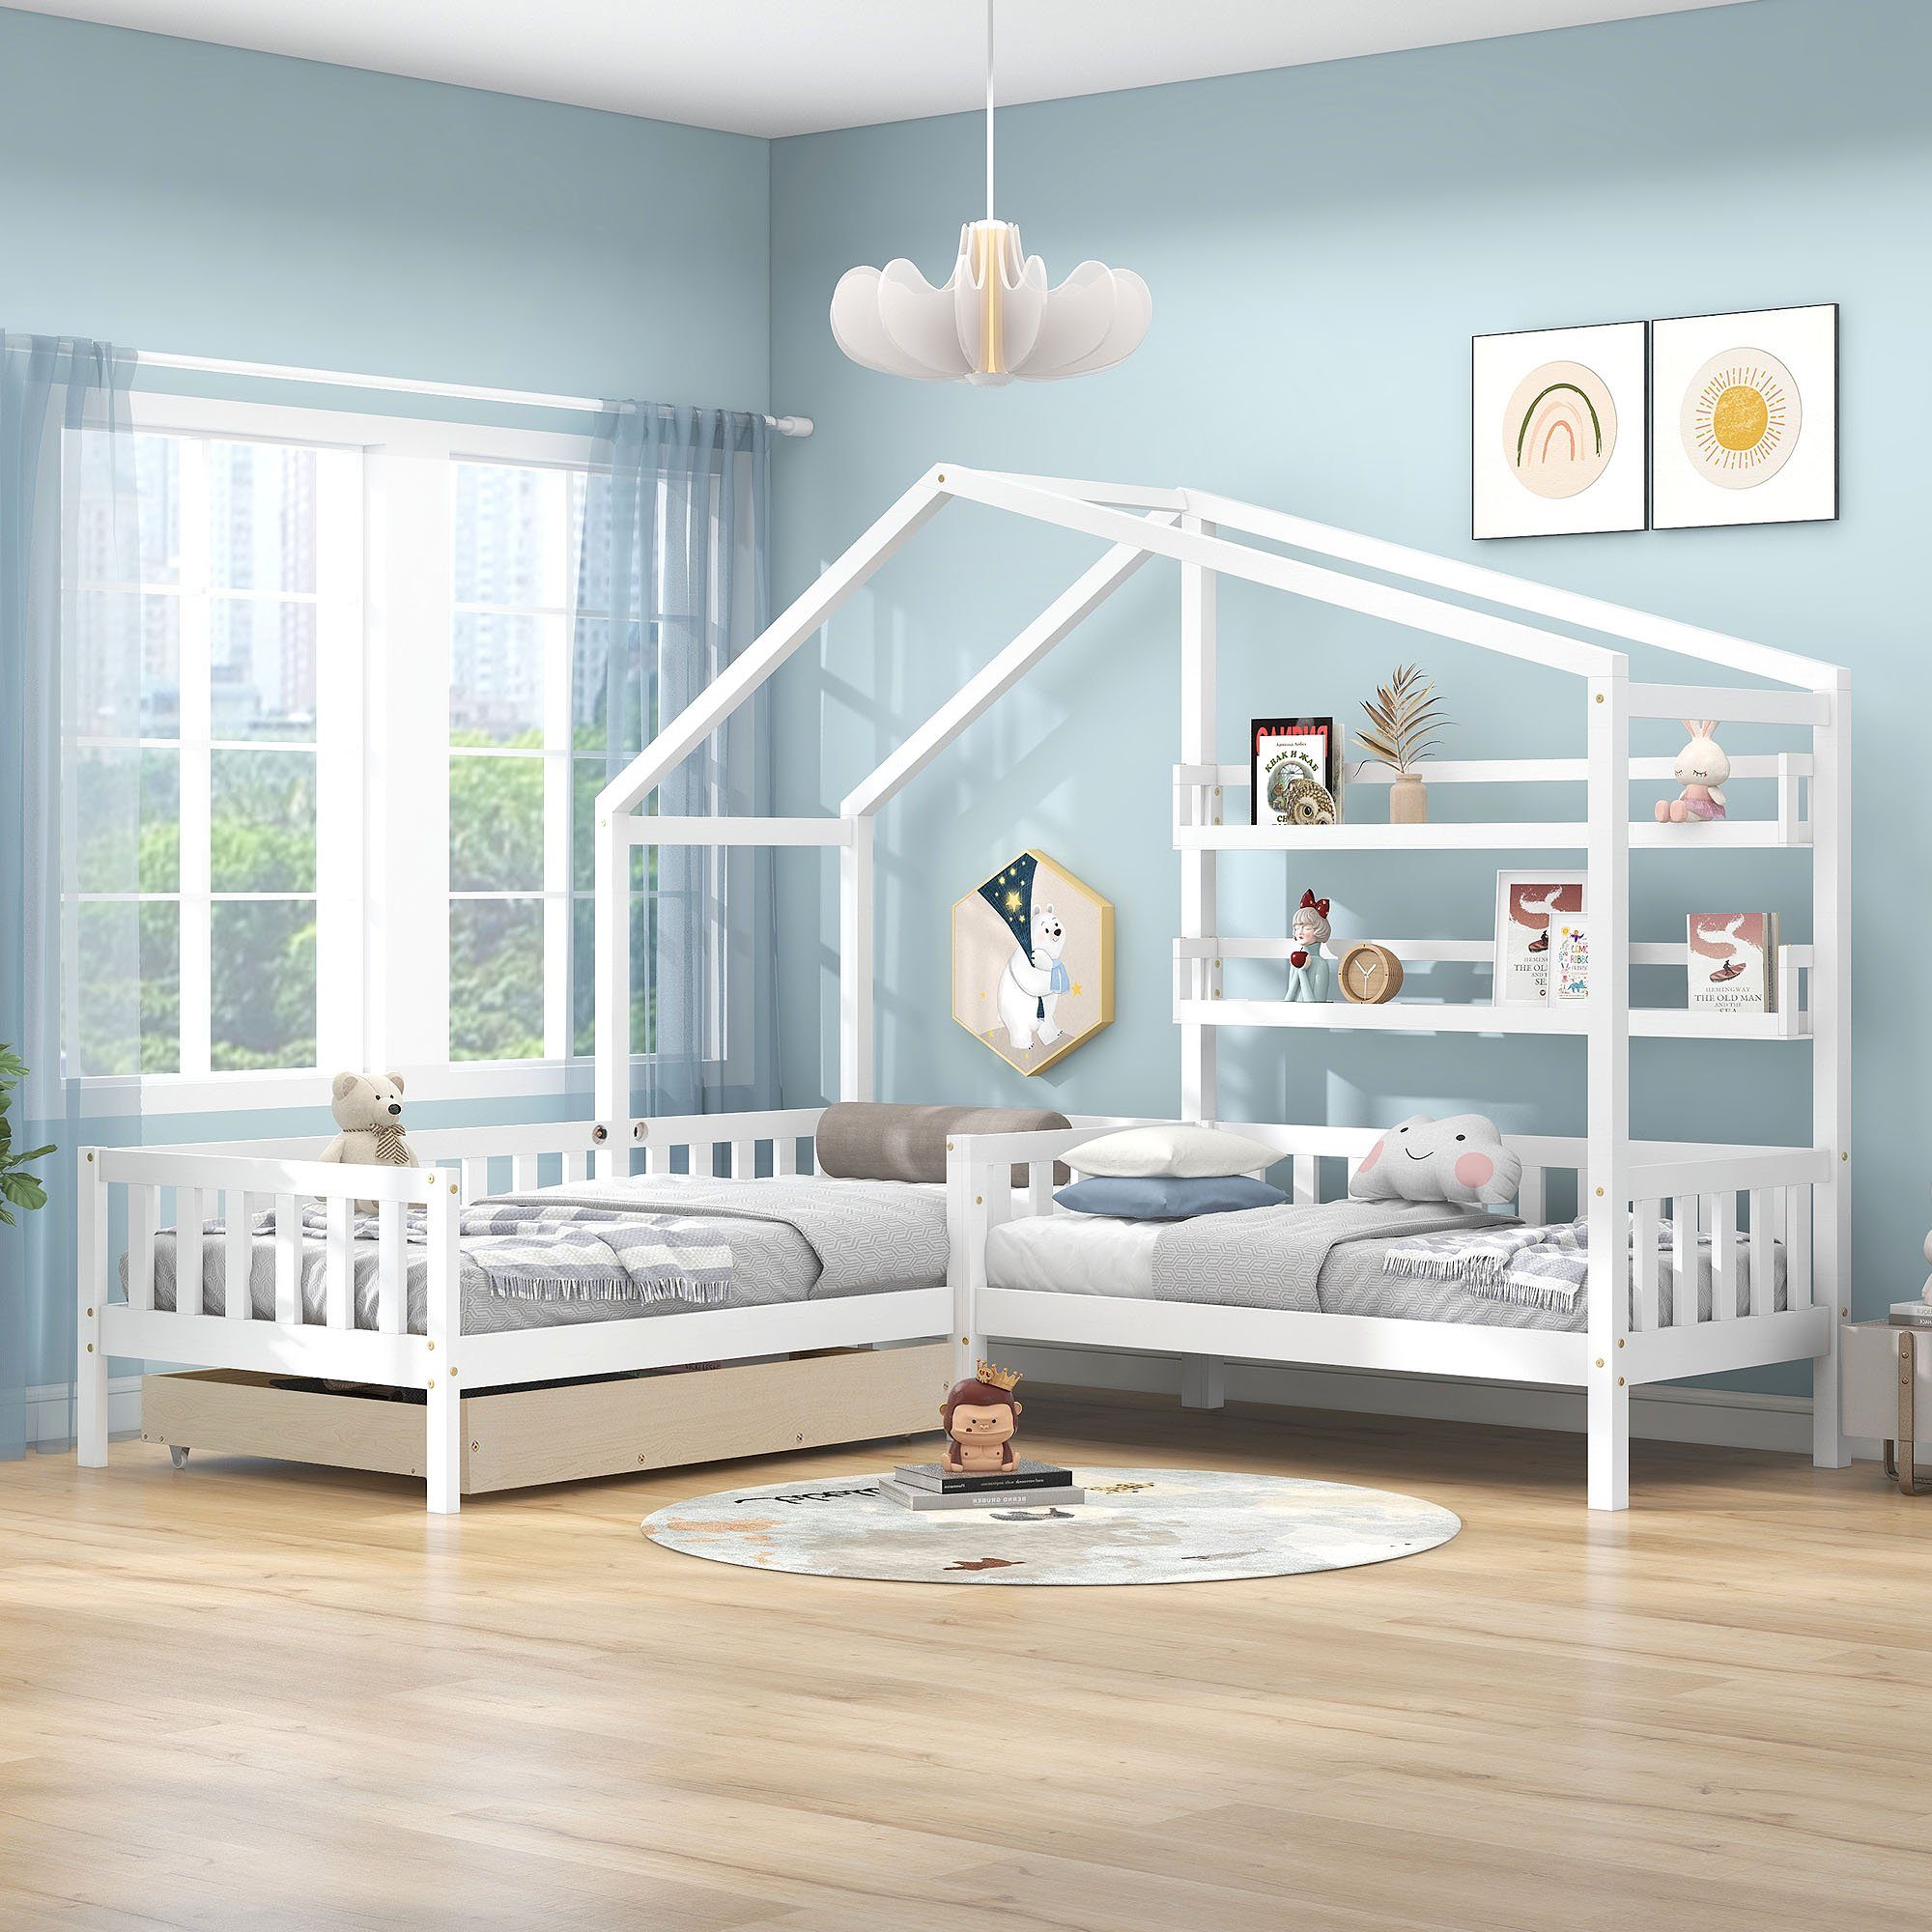 Ulife Jugendbett Kinderbett Hausbett mit Schubladen und Regale L-Struktur, 90x200cm+70x140cm Weiß | Weiß | Weiß | Weiß